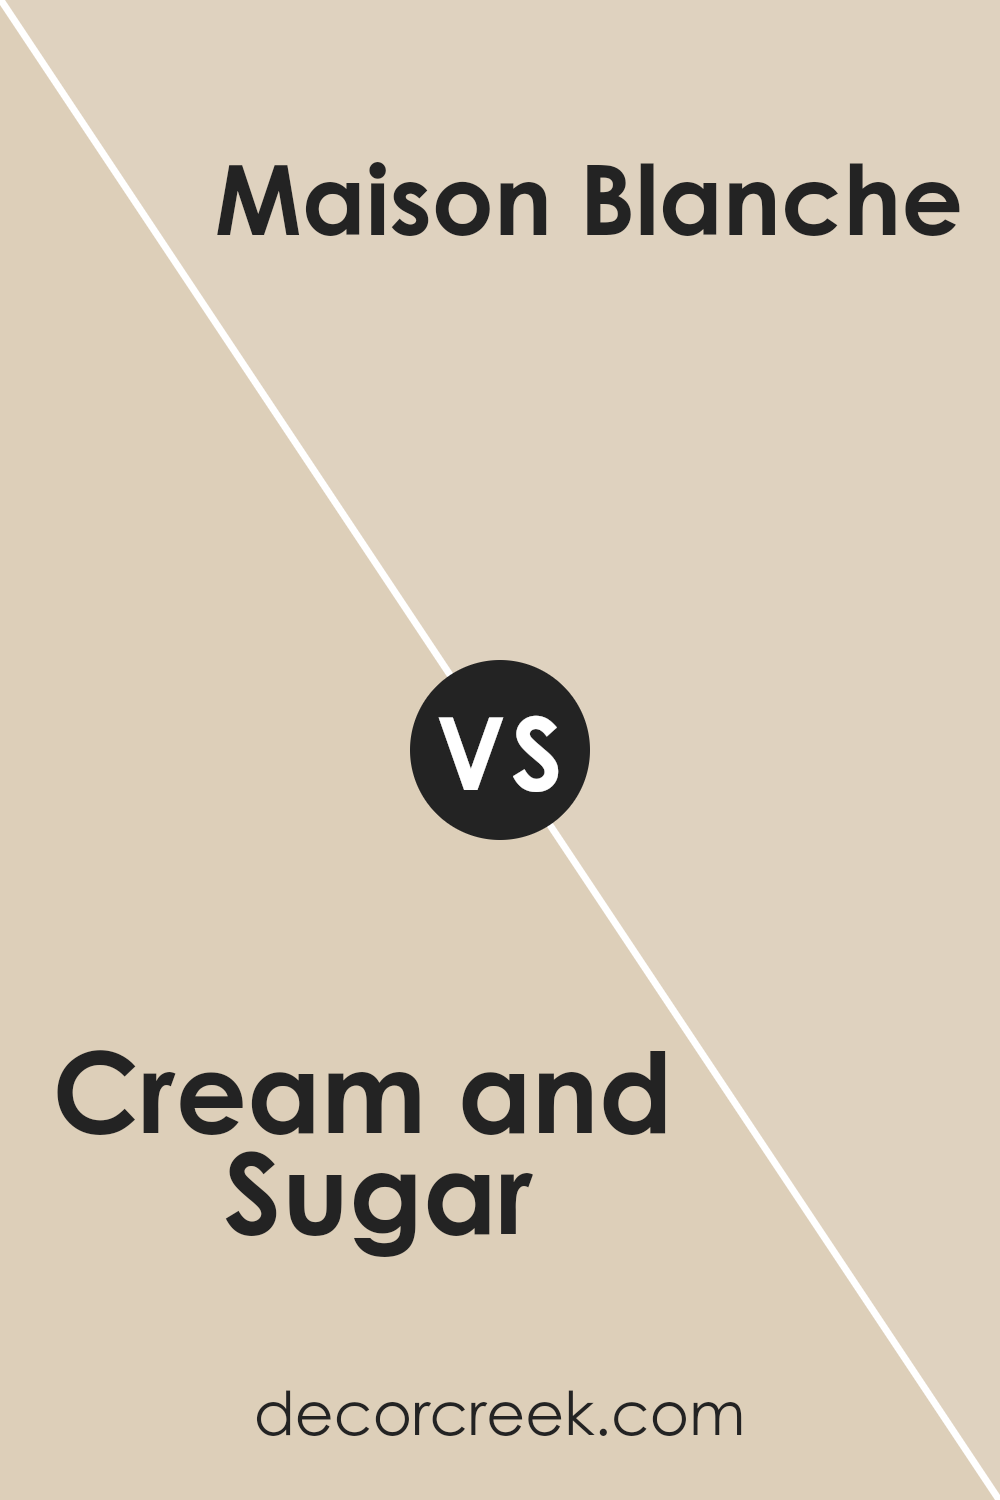 cream_and_sugar_sw_9507_vs_maison_blanche_sw_7526